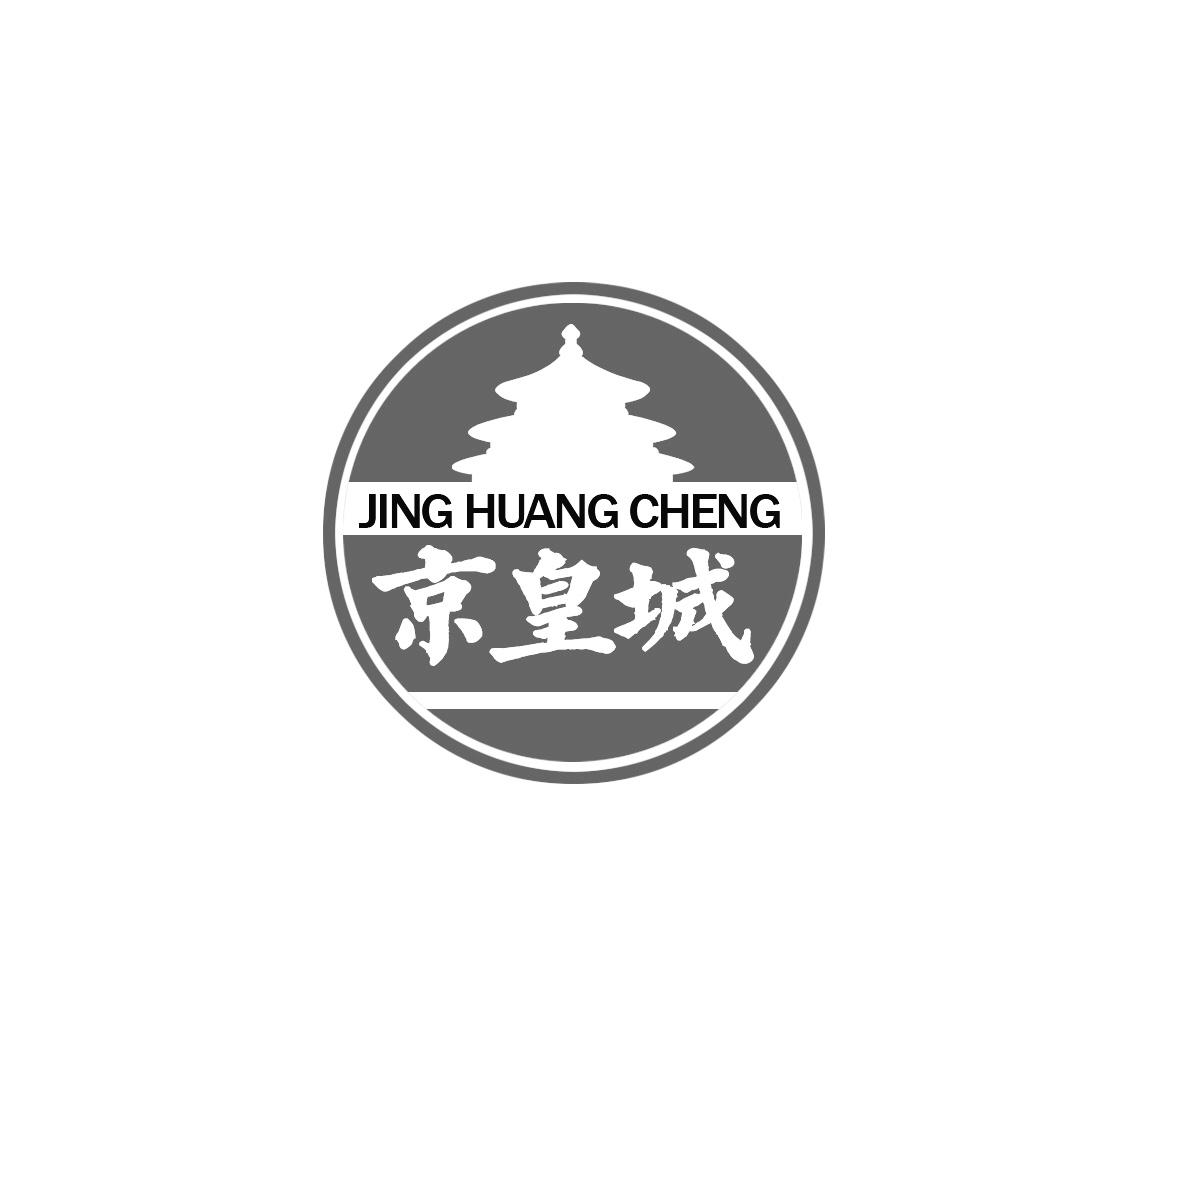 商标文字京皇城商标注册号 55293761,商标申请人保定凯盛商贸有限公司